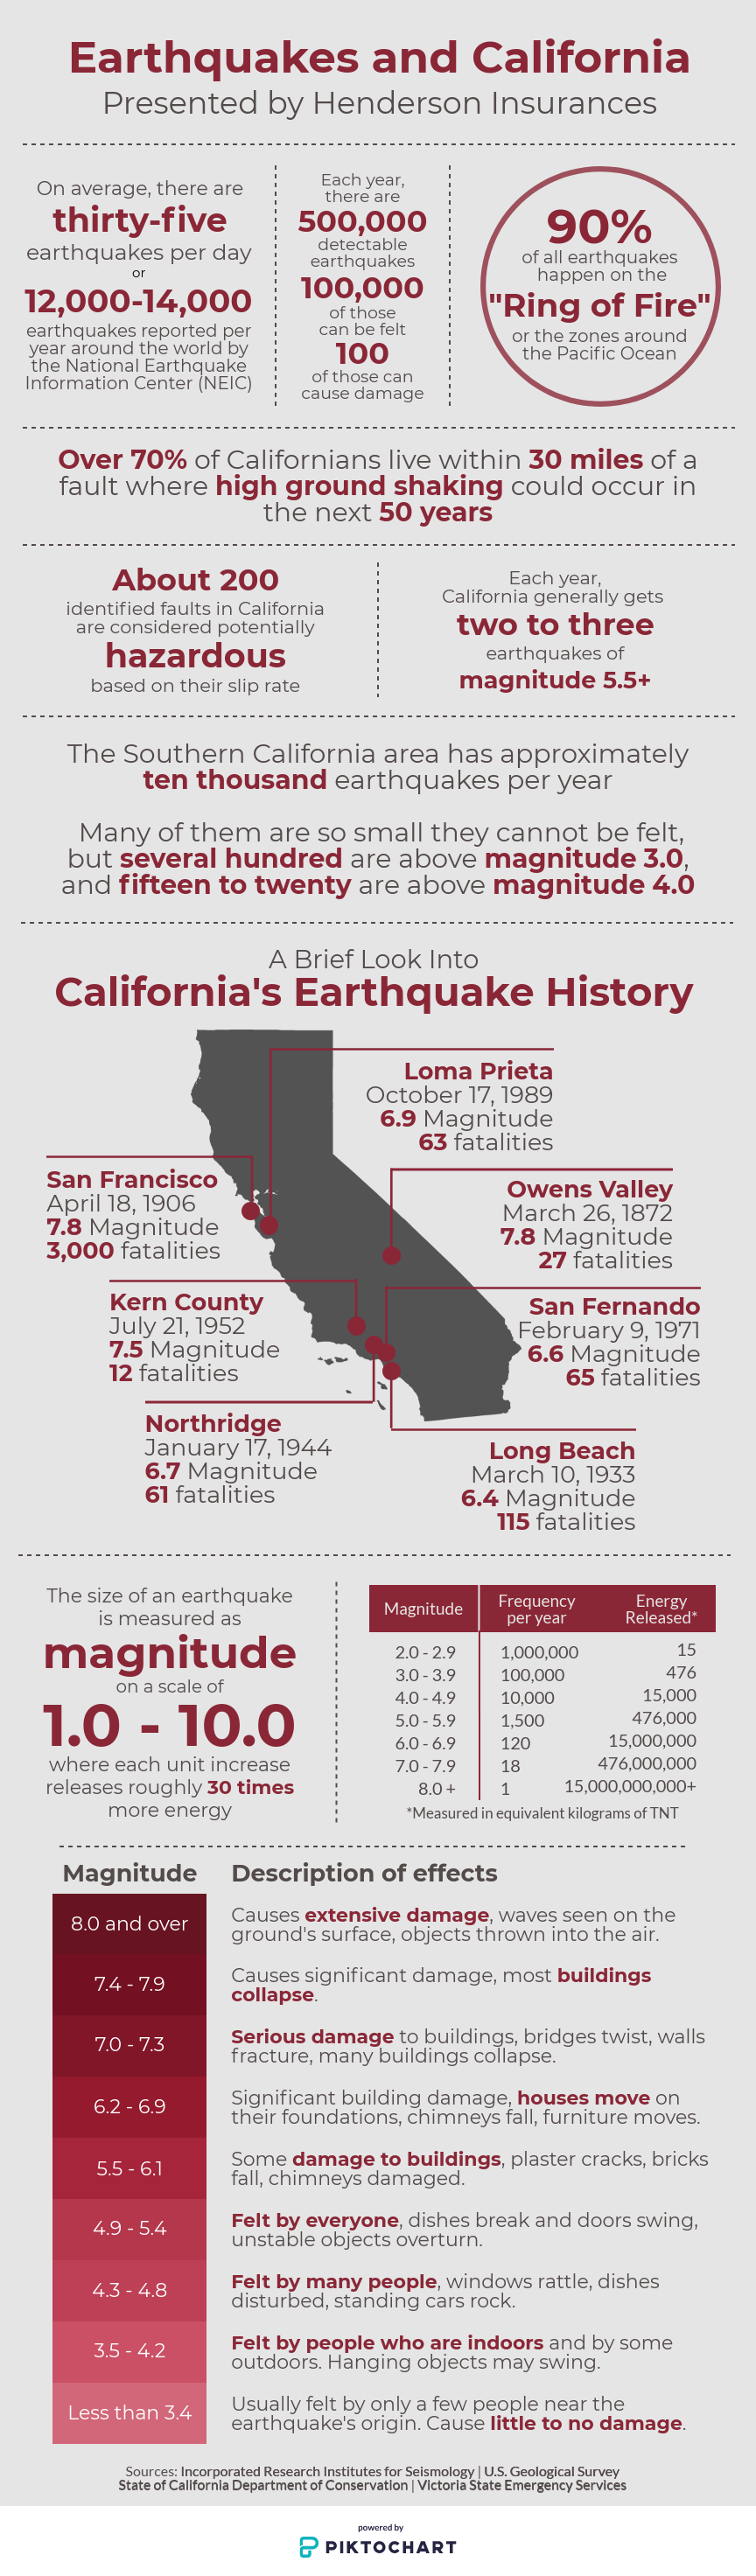 Earthquakes and California